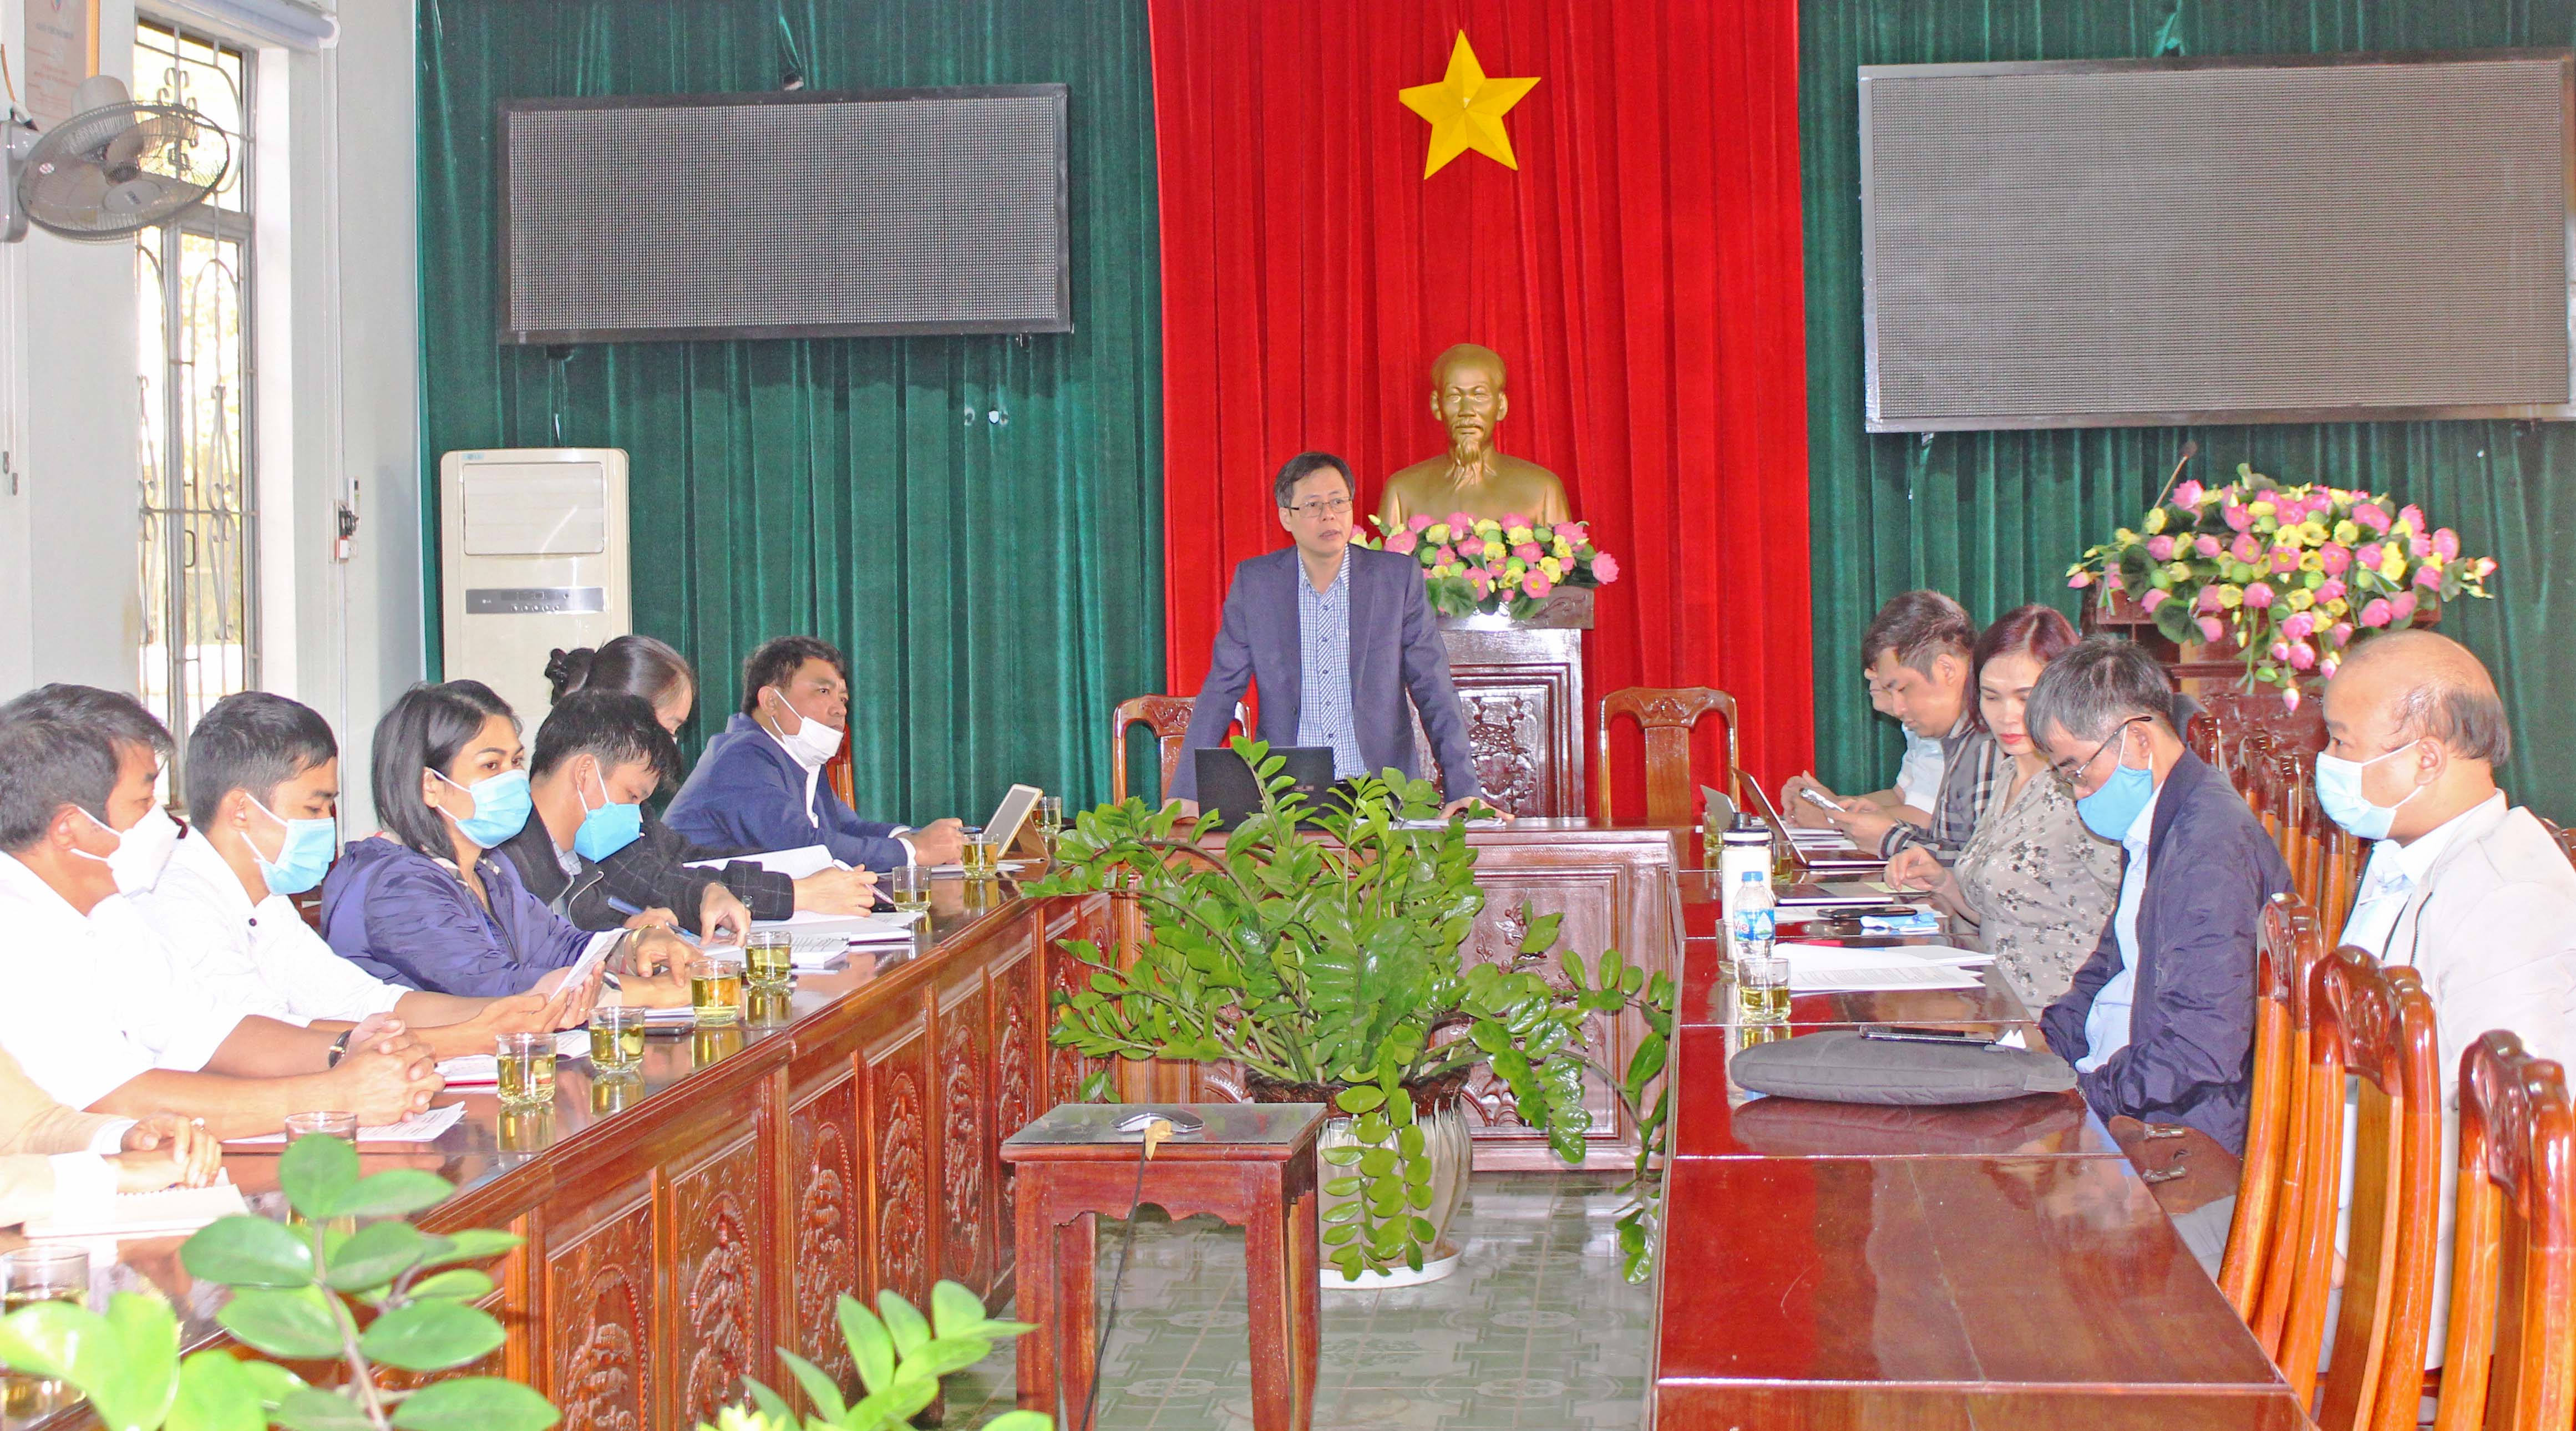 Đoàn nghiên cứu Học viện Chính trị Quốc gia Hồ Chí Minh làm việc với UBND huyện Chư Păh để đánh giá hiệu quả thực hiện dịch vụ công trực tuyến. Ảnh: Phan Lài